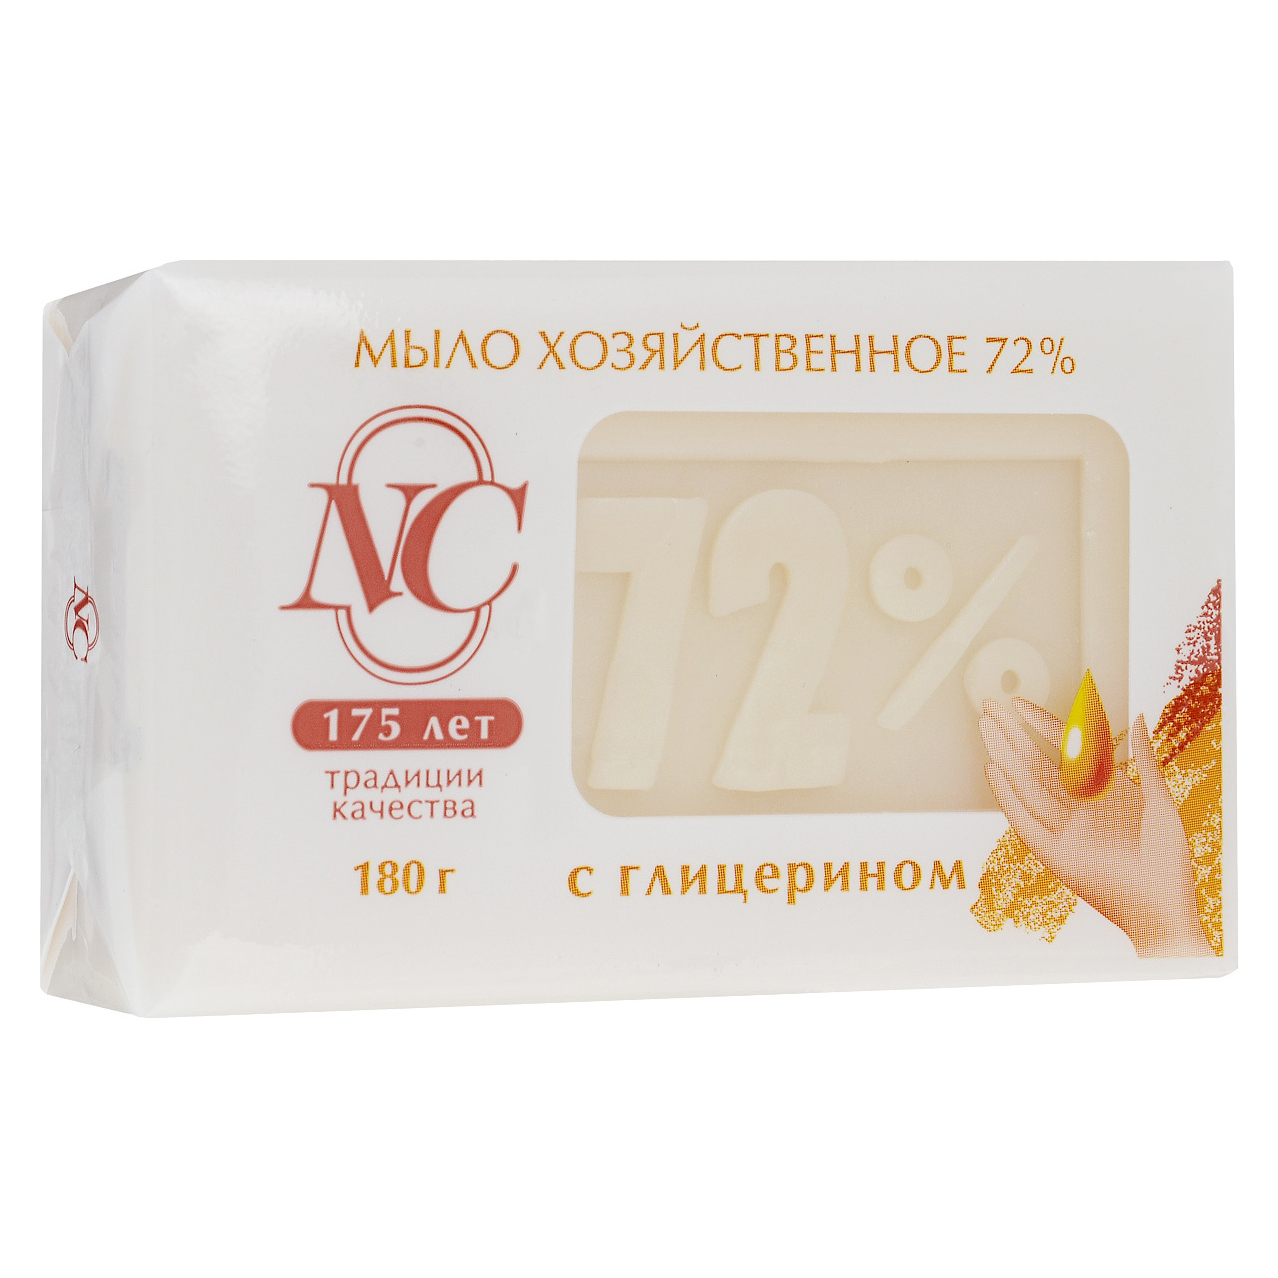 Традиционное хозяйственное мыло Невская косметика 72% с глицерином 180 г мыло невская косметика яблоневый сад 90 г